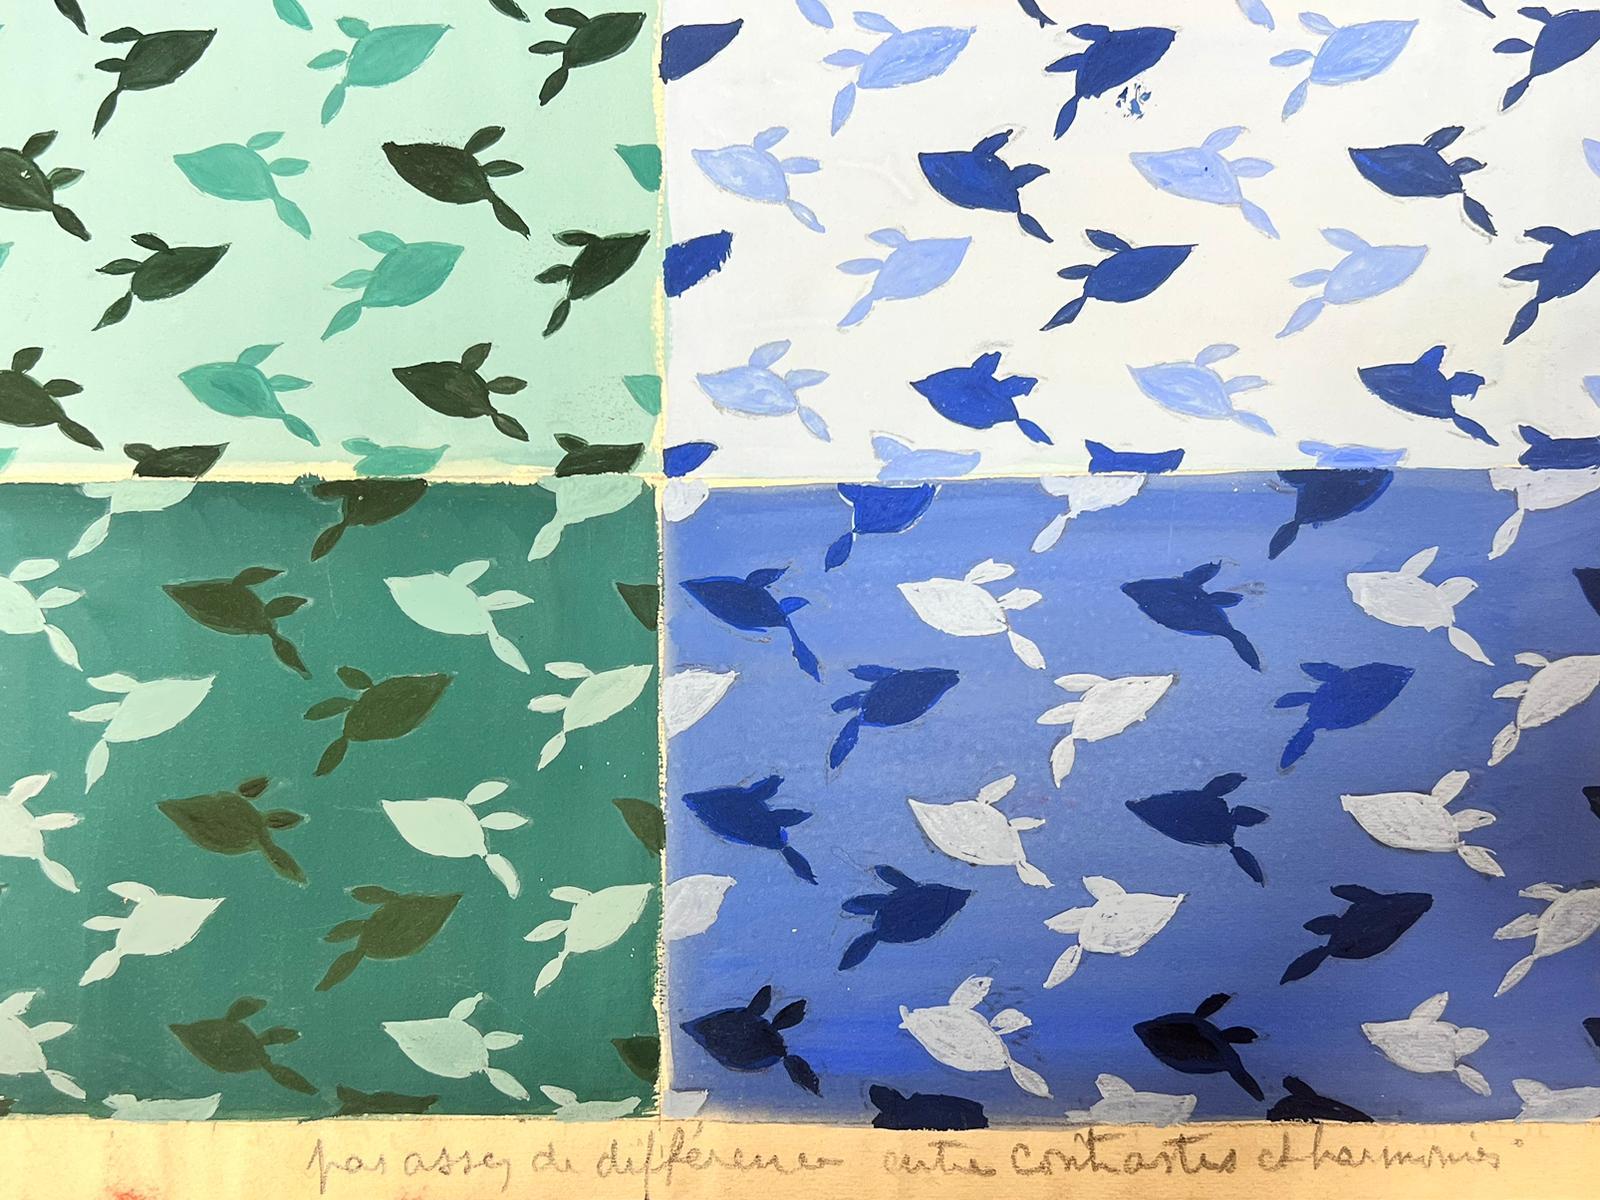 Schildkröte Wallapaper
von Josine Vignon (Französisch 1922-2022) 
Pastell/Aquarell auf Papier, ungerahmt
Gemälde: 13 x 20 Zoll
guter Zustand
Herkunft: aus dem Nachlass des Künstlers, Frankreich

Josine Vignon (1922-2022) war eine französische